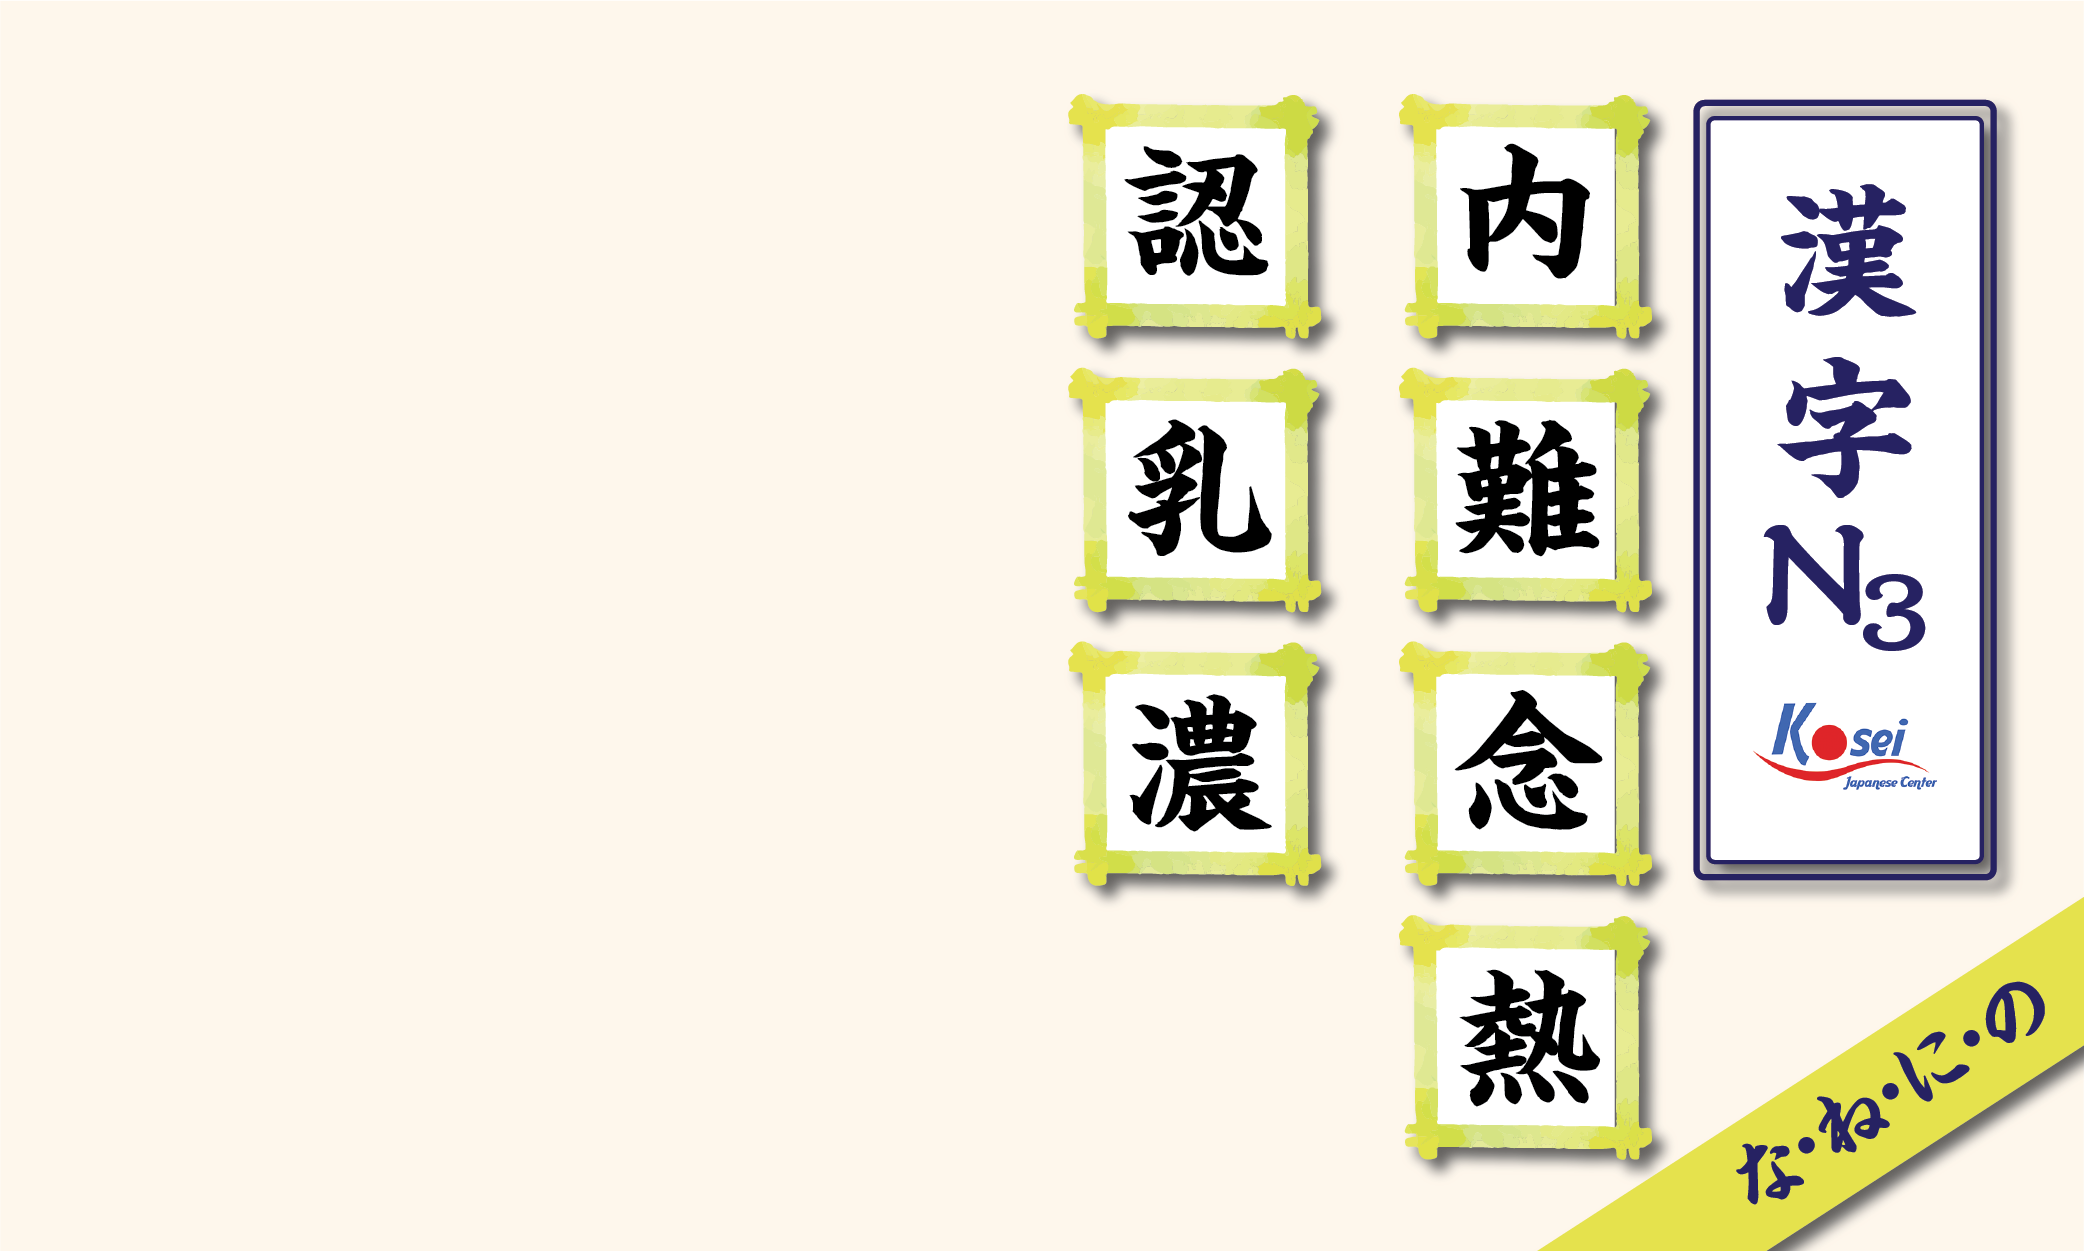 kanji n3 theo âm on hàng n